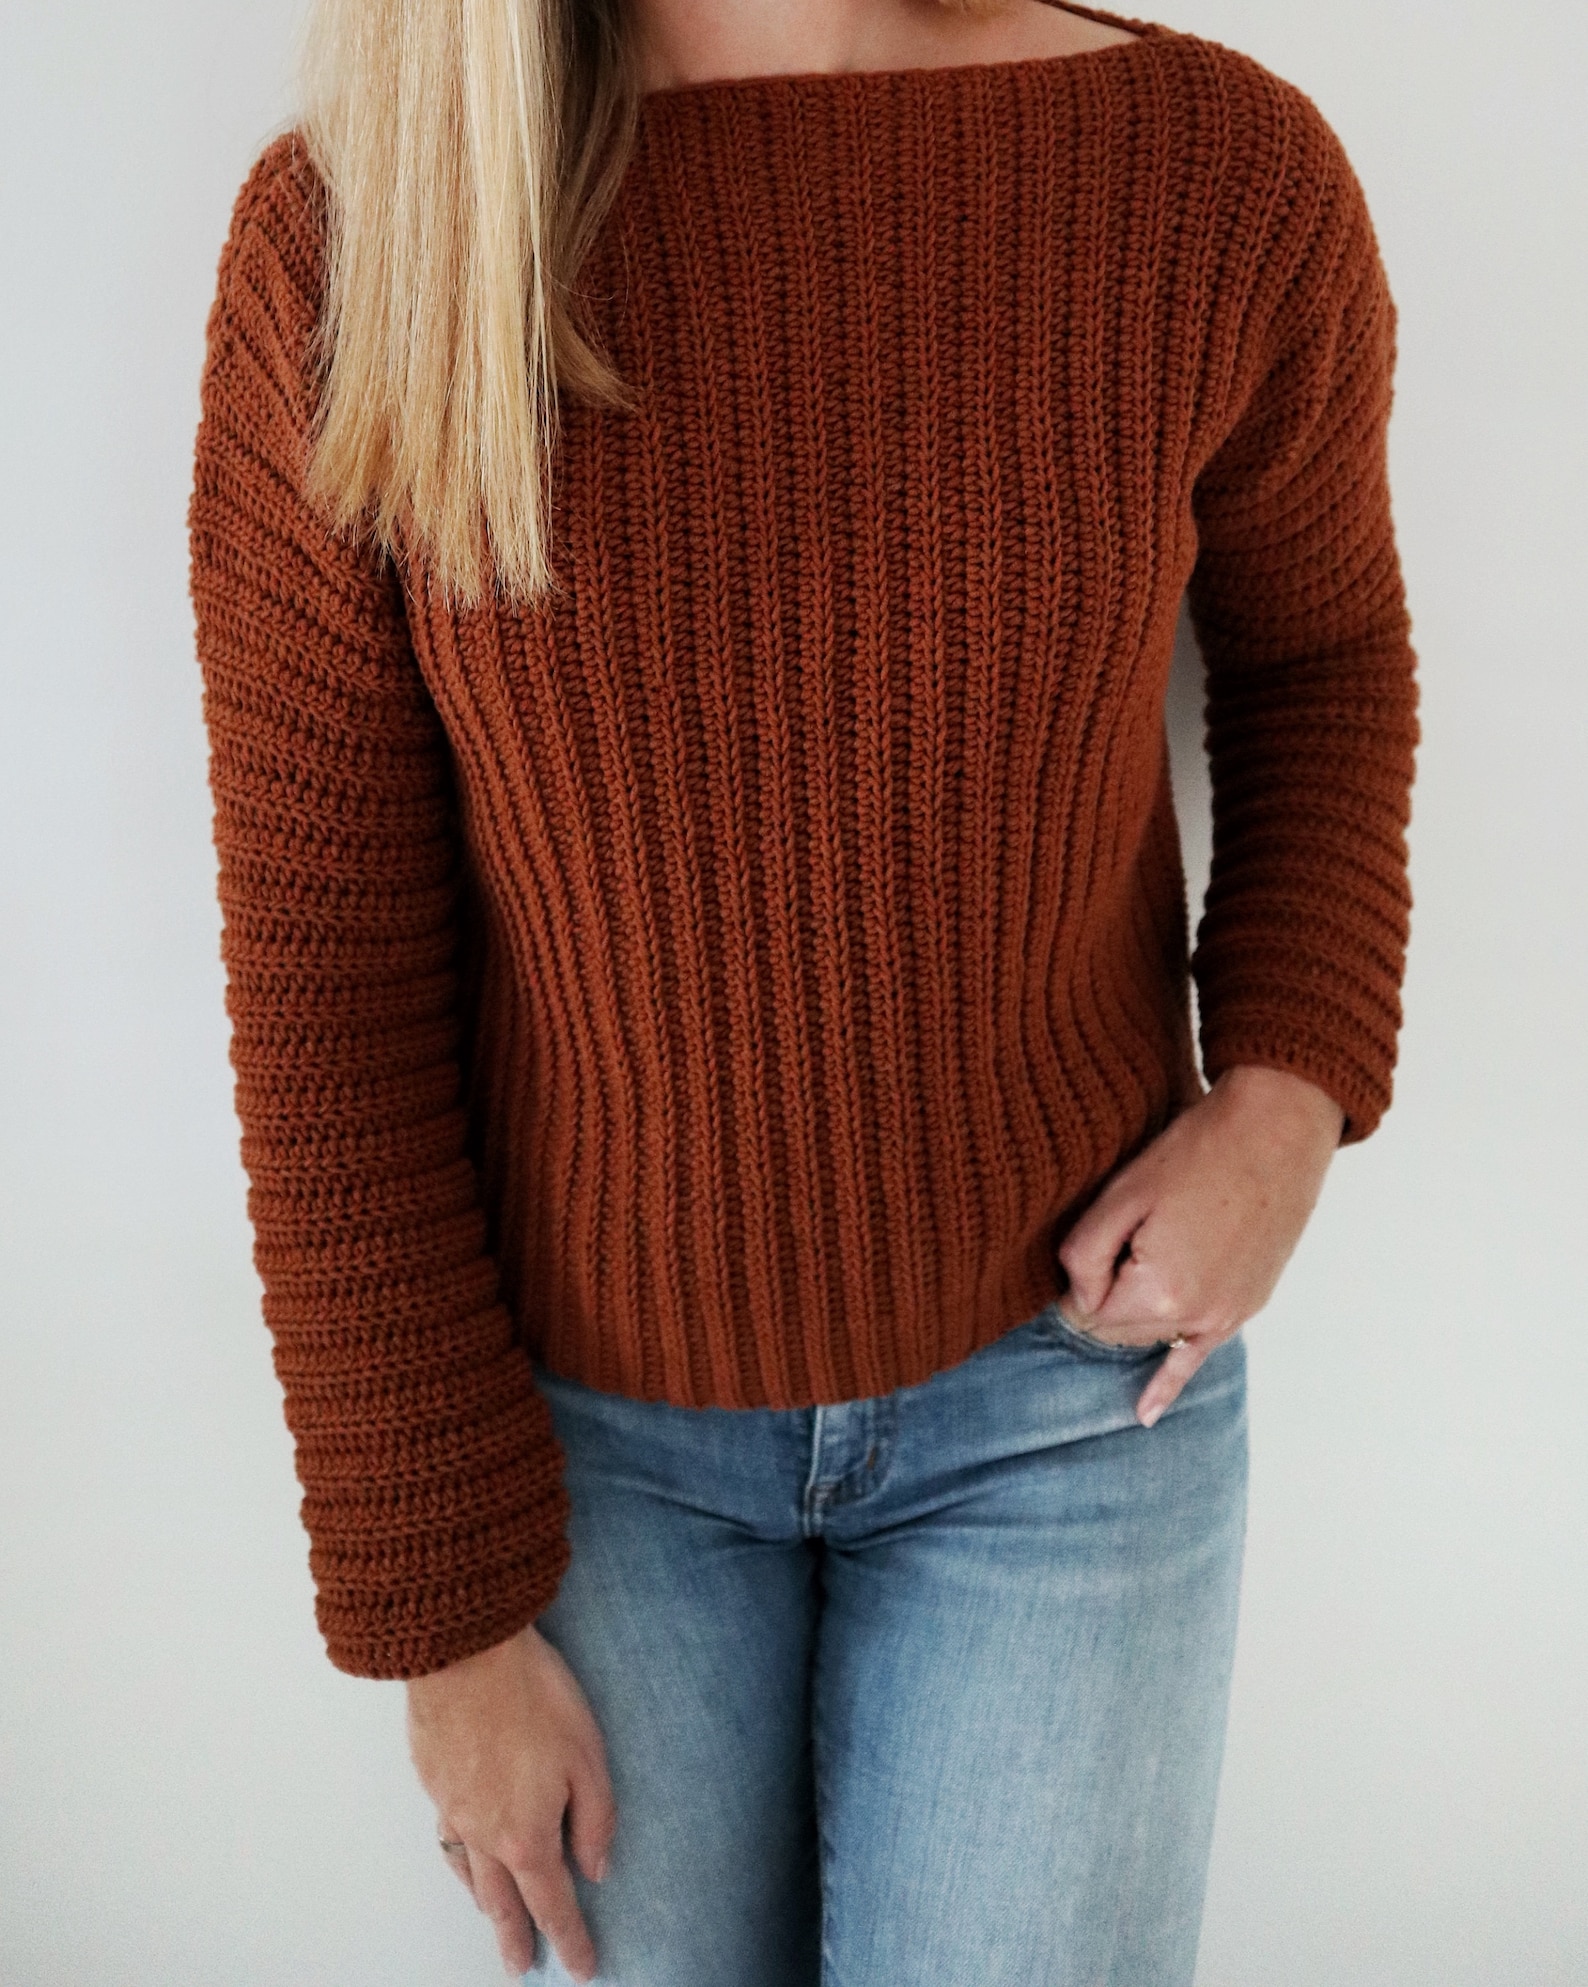 Crochet Sweater PDF Pattern / Brunch Time Sweater / Cozy | Etsy